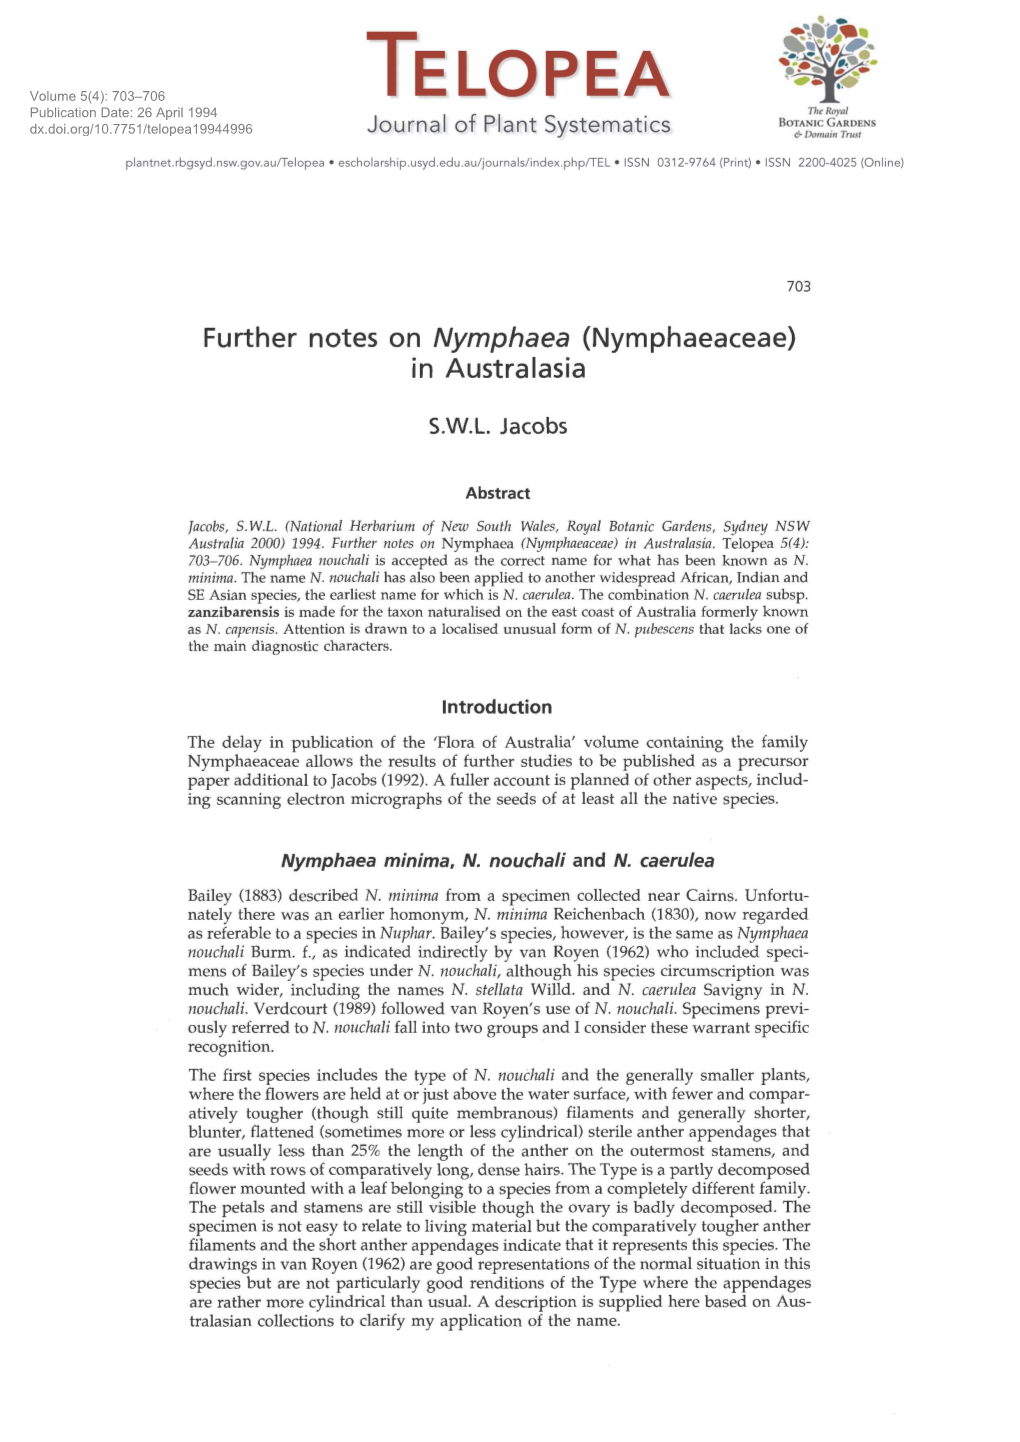 Nymphaeaceae) in Australasia